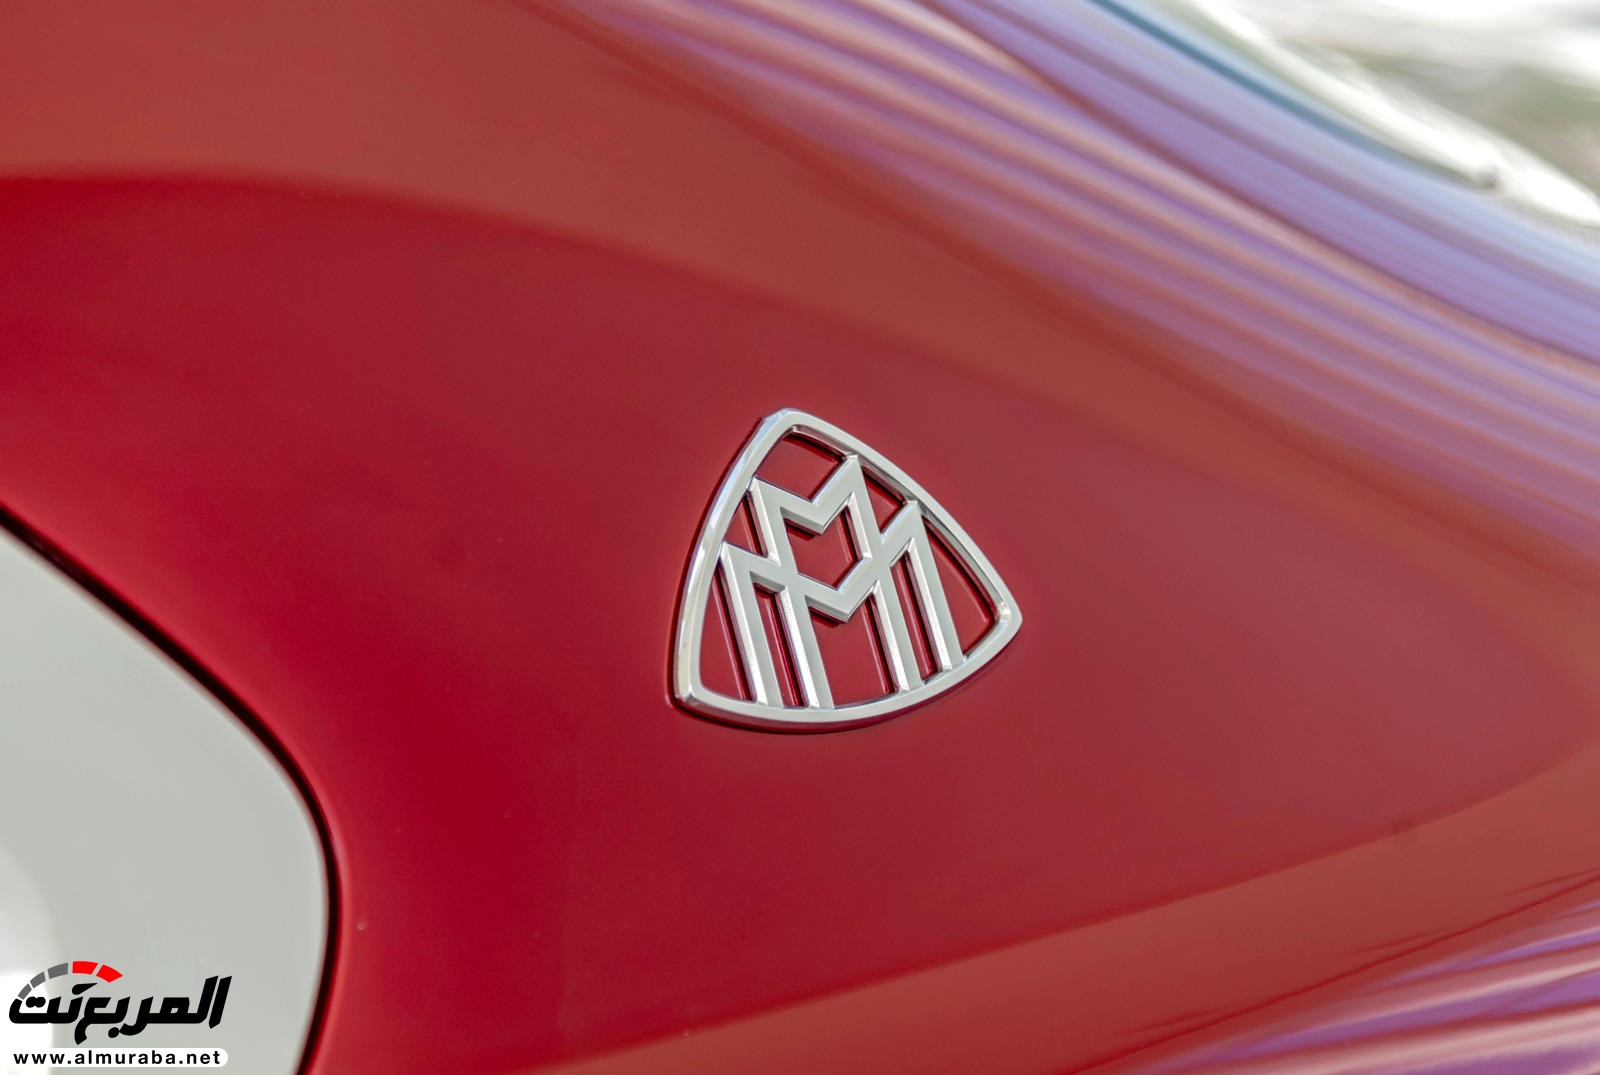 "بالصور" نظرة على مرسيدس مايباخ SUV الاختبارية وفخامتها الداخلية والخارجية 69